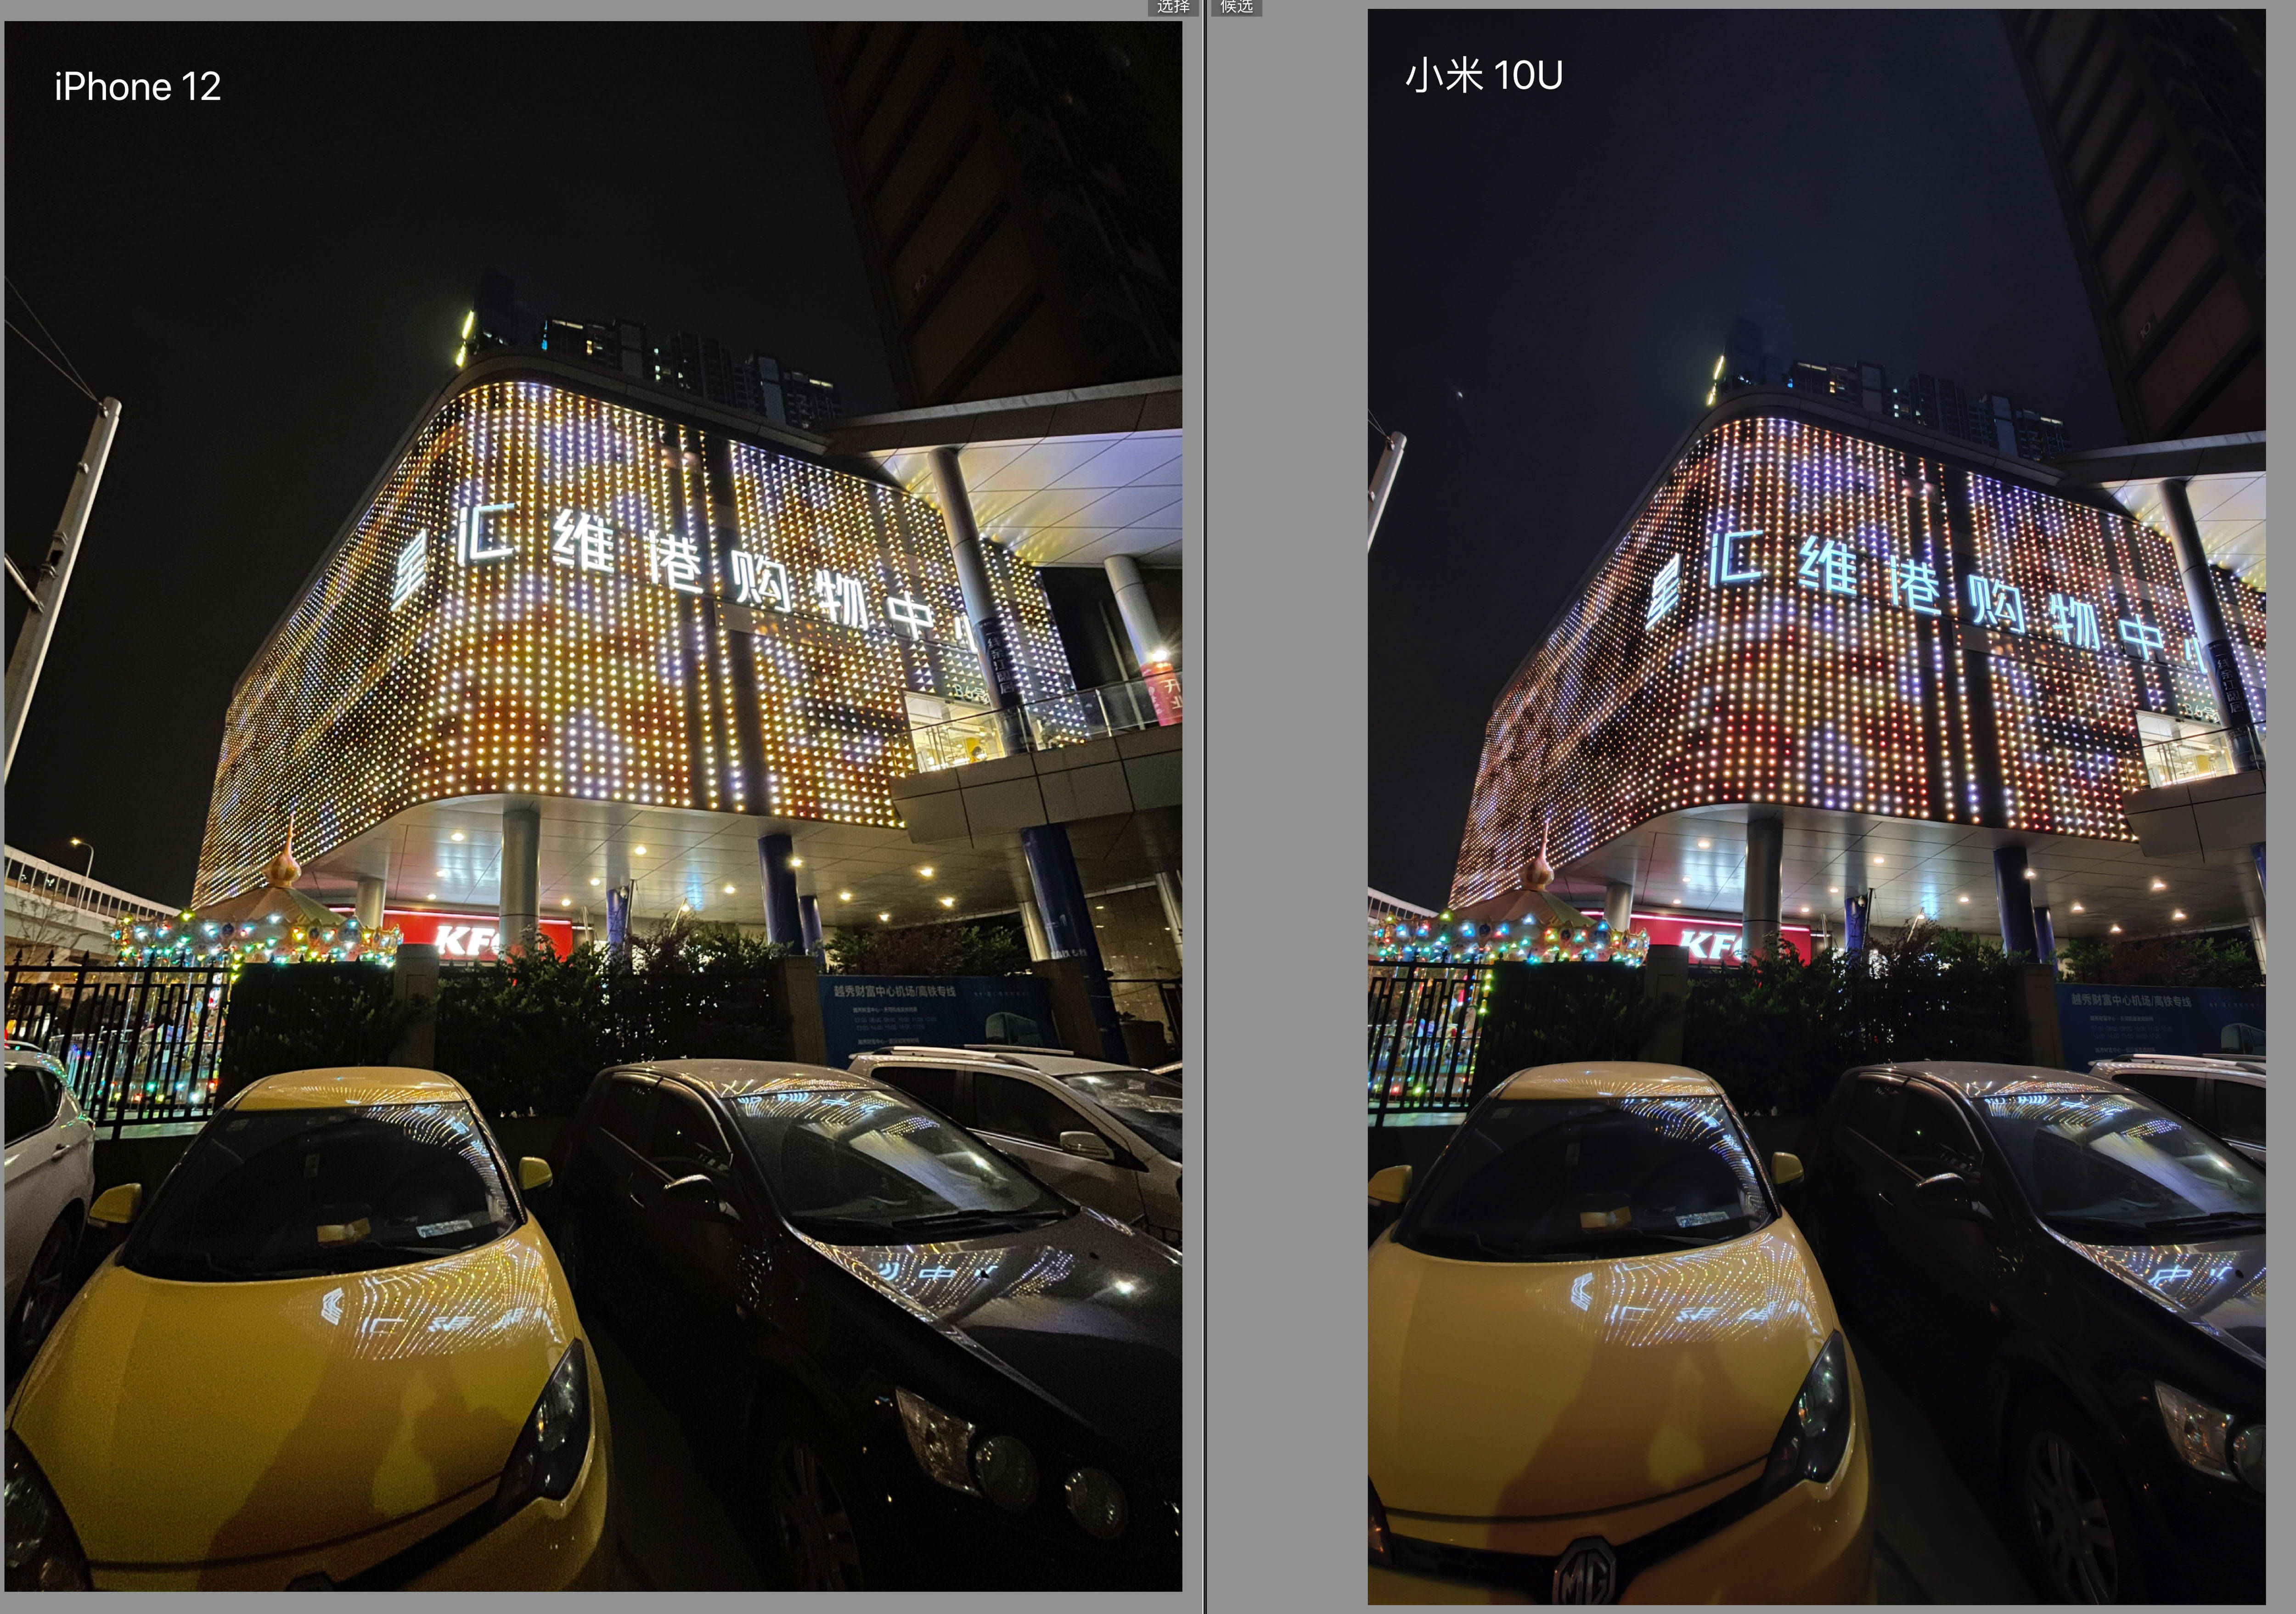 苹果iphone 12 与小米 10 至尊纪念版超广角夜间拍照详细对比